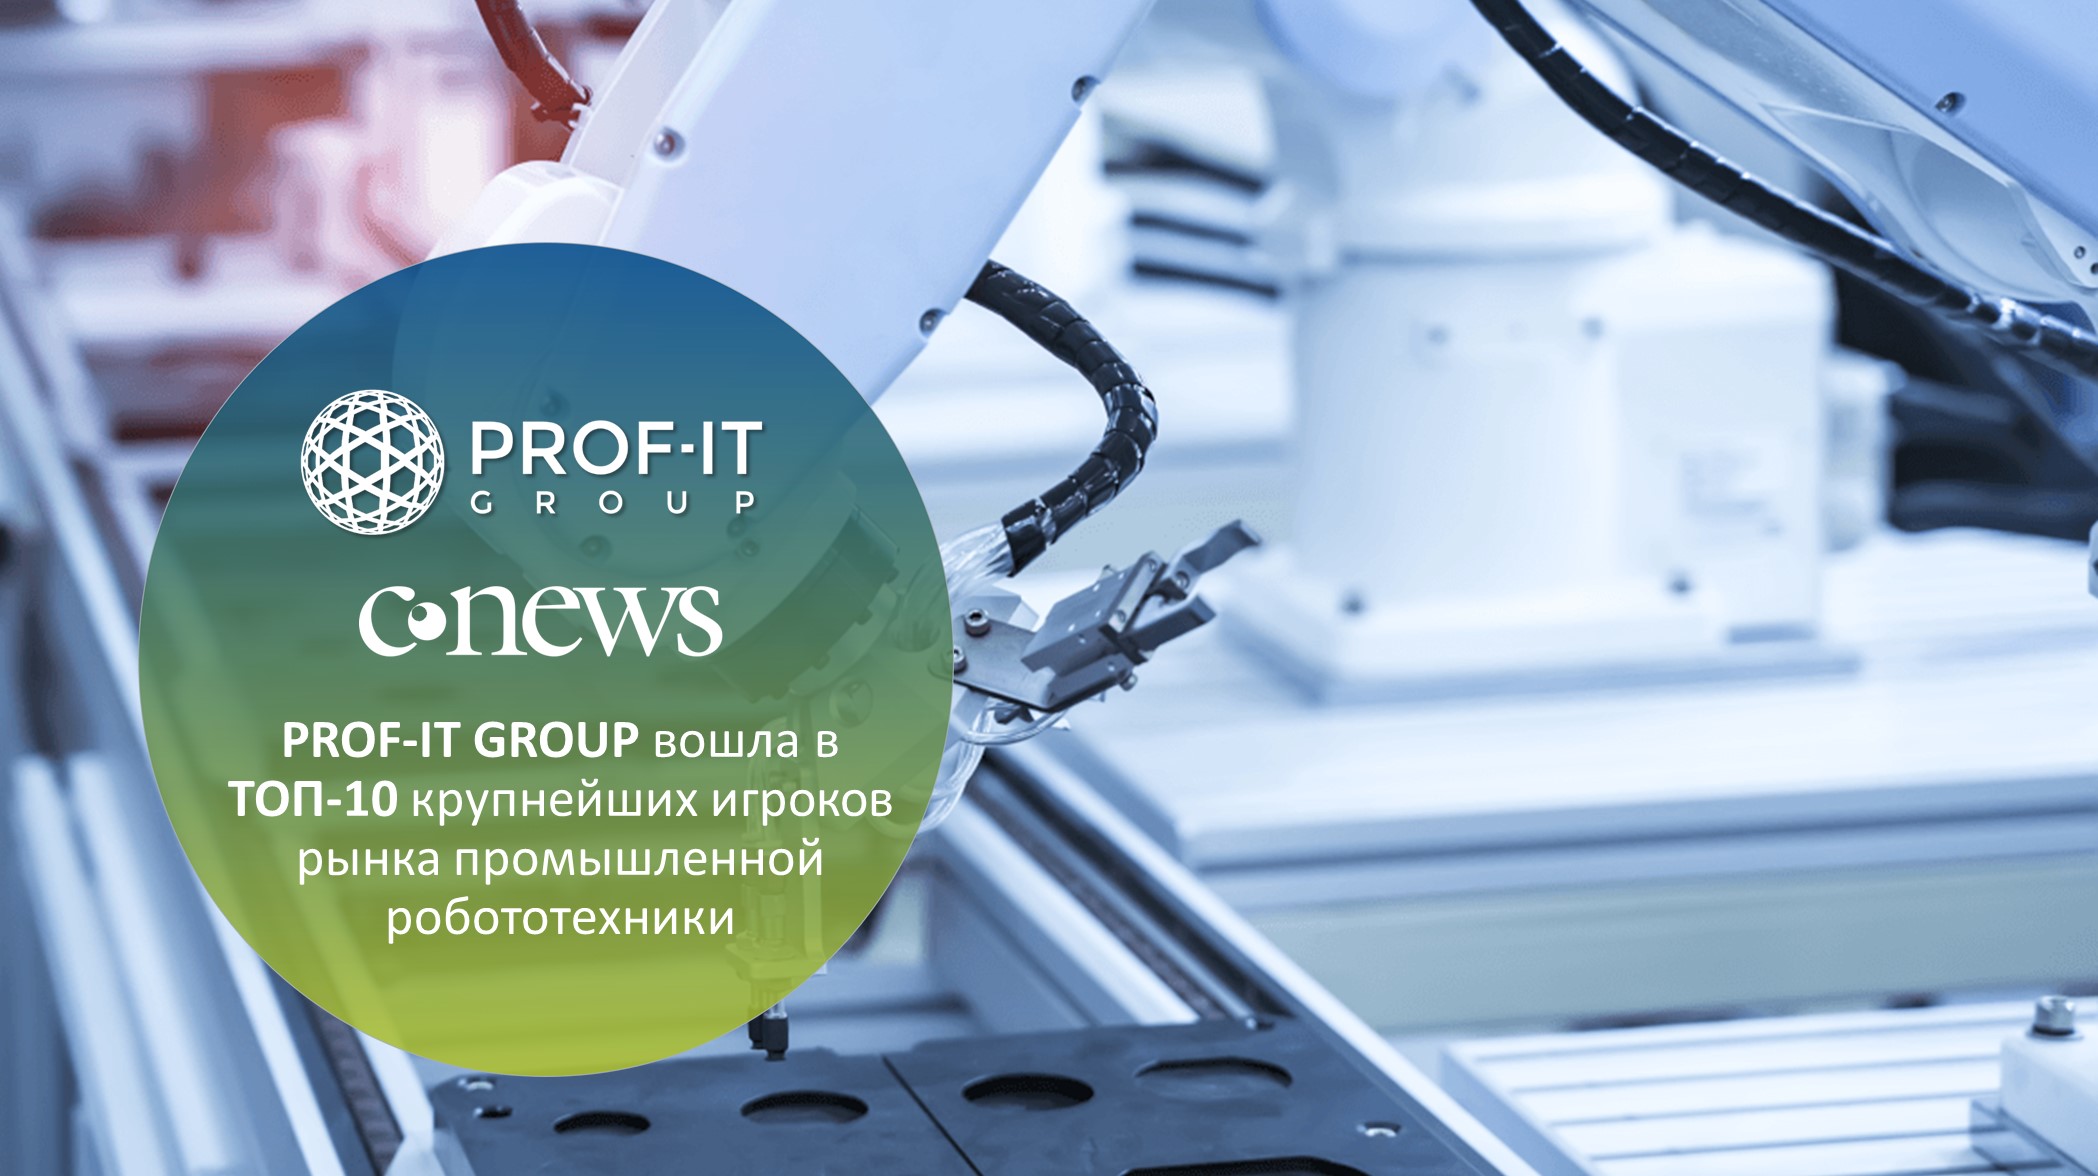 PROF-IT GROUP вошла в ТОП-10 крупнейших игроков рынка промышленной робототехники